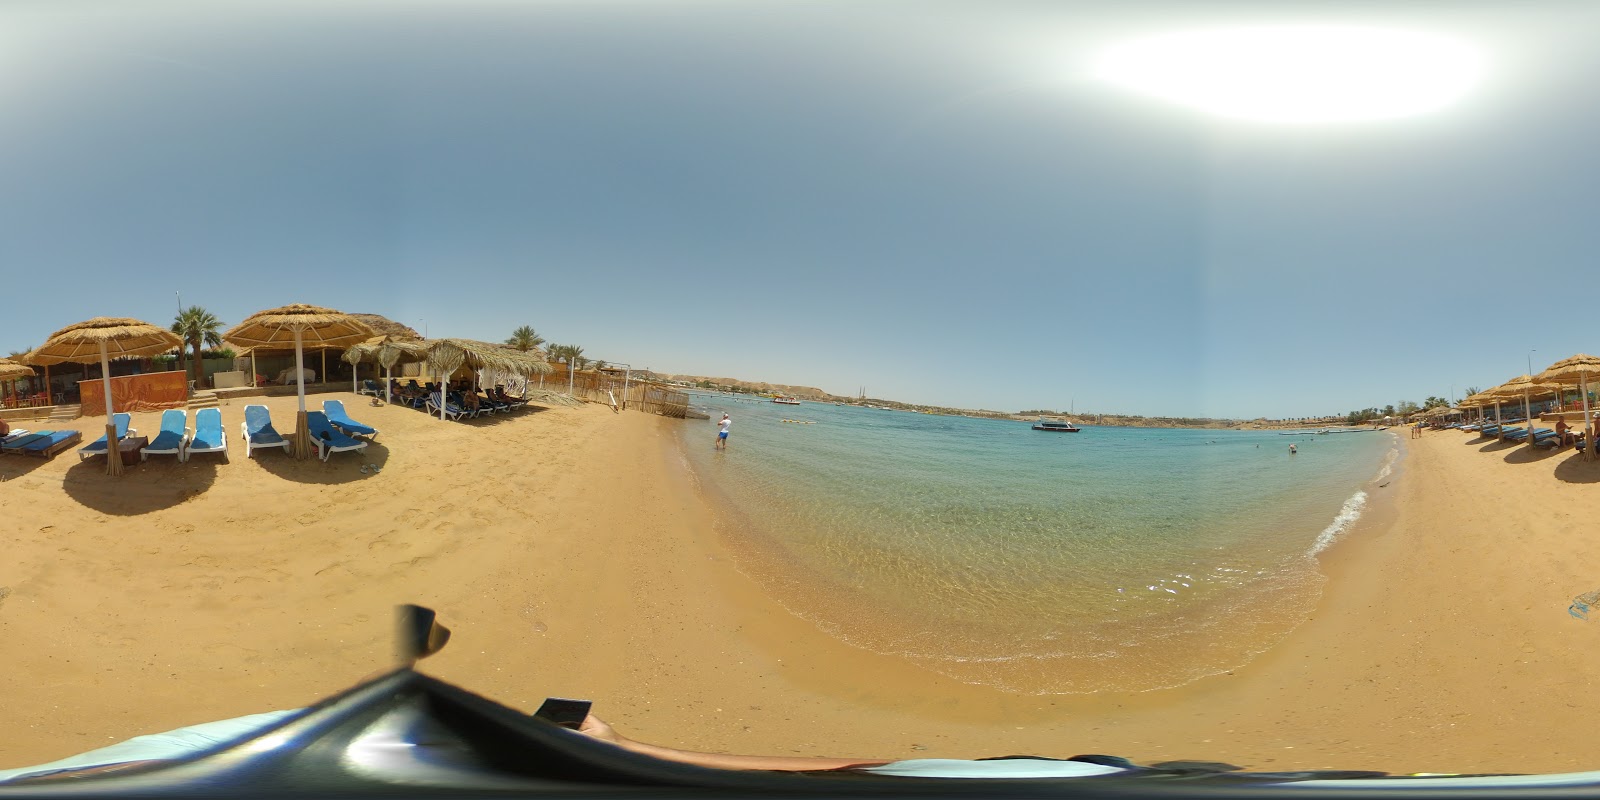 Foto av Hala beach hotellområde